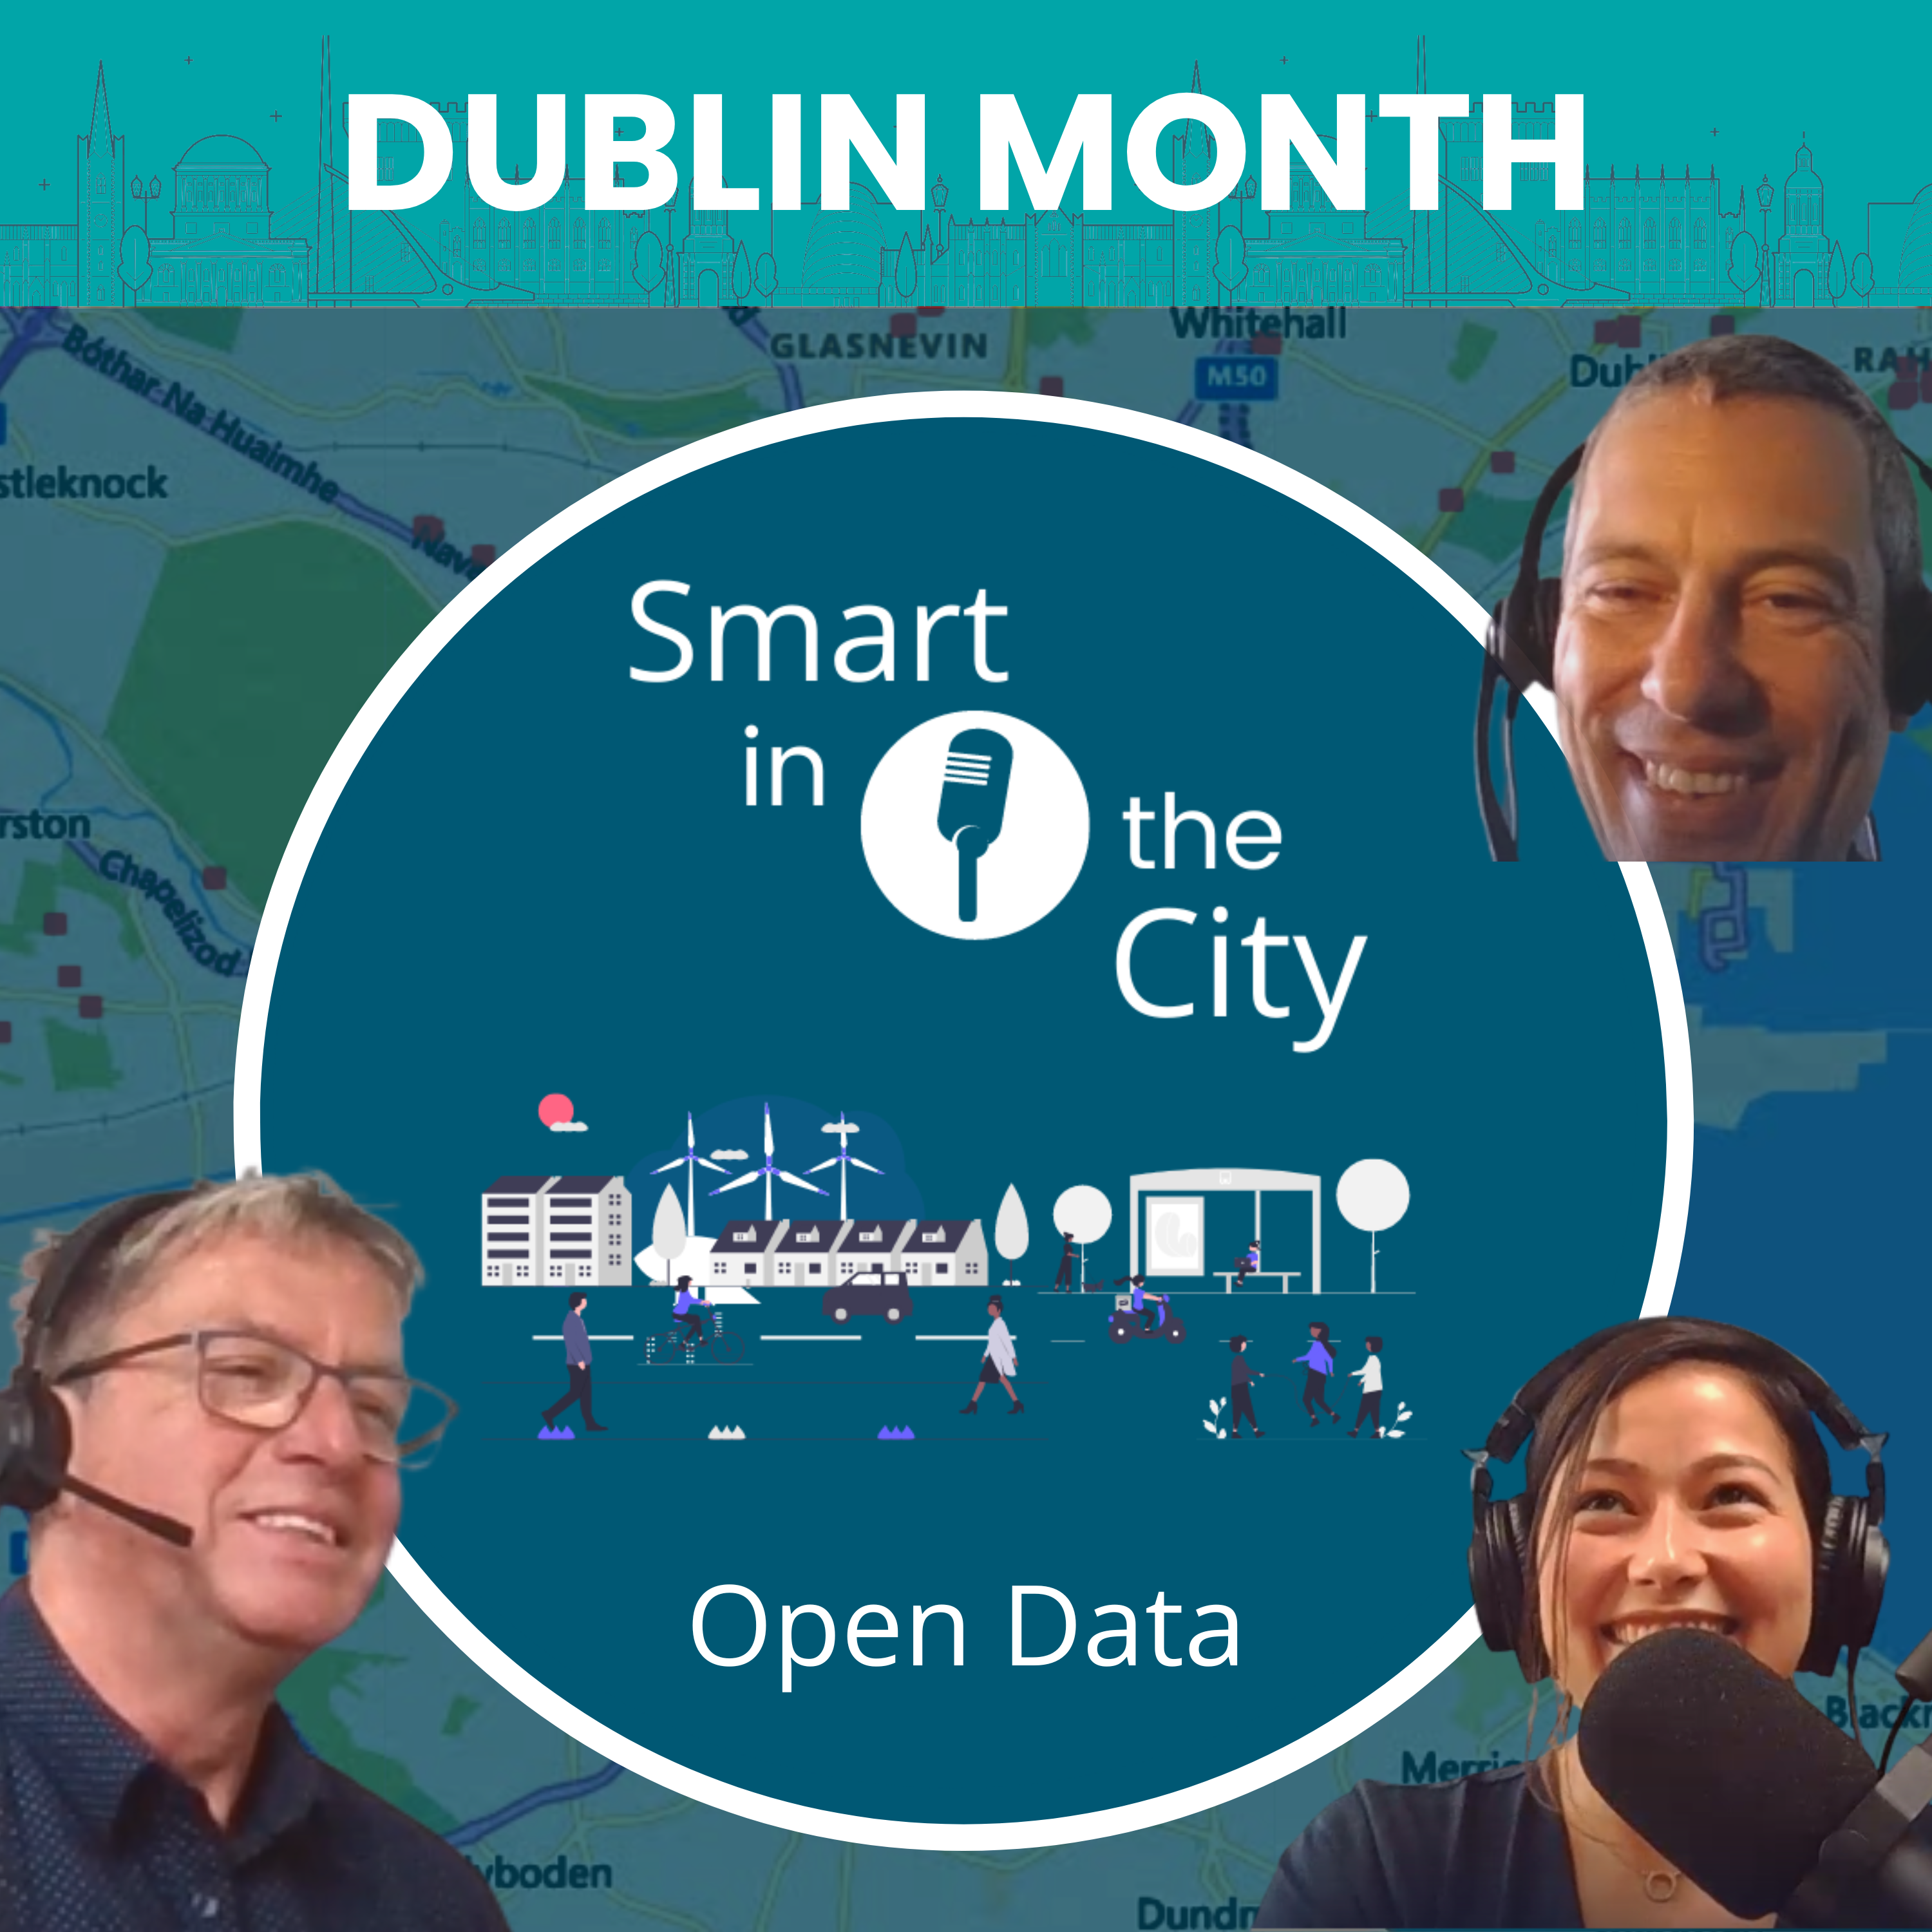 Dublin Month #2 - Open Data: 